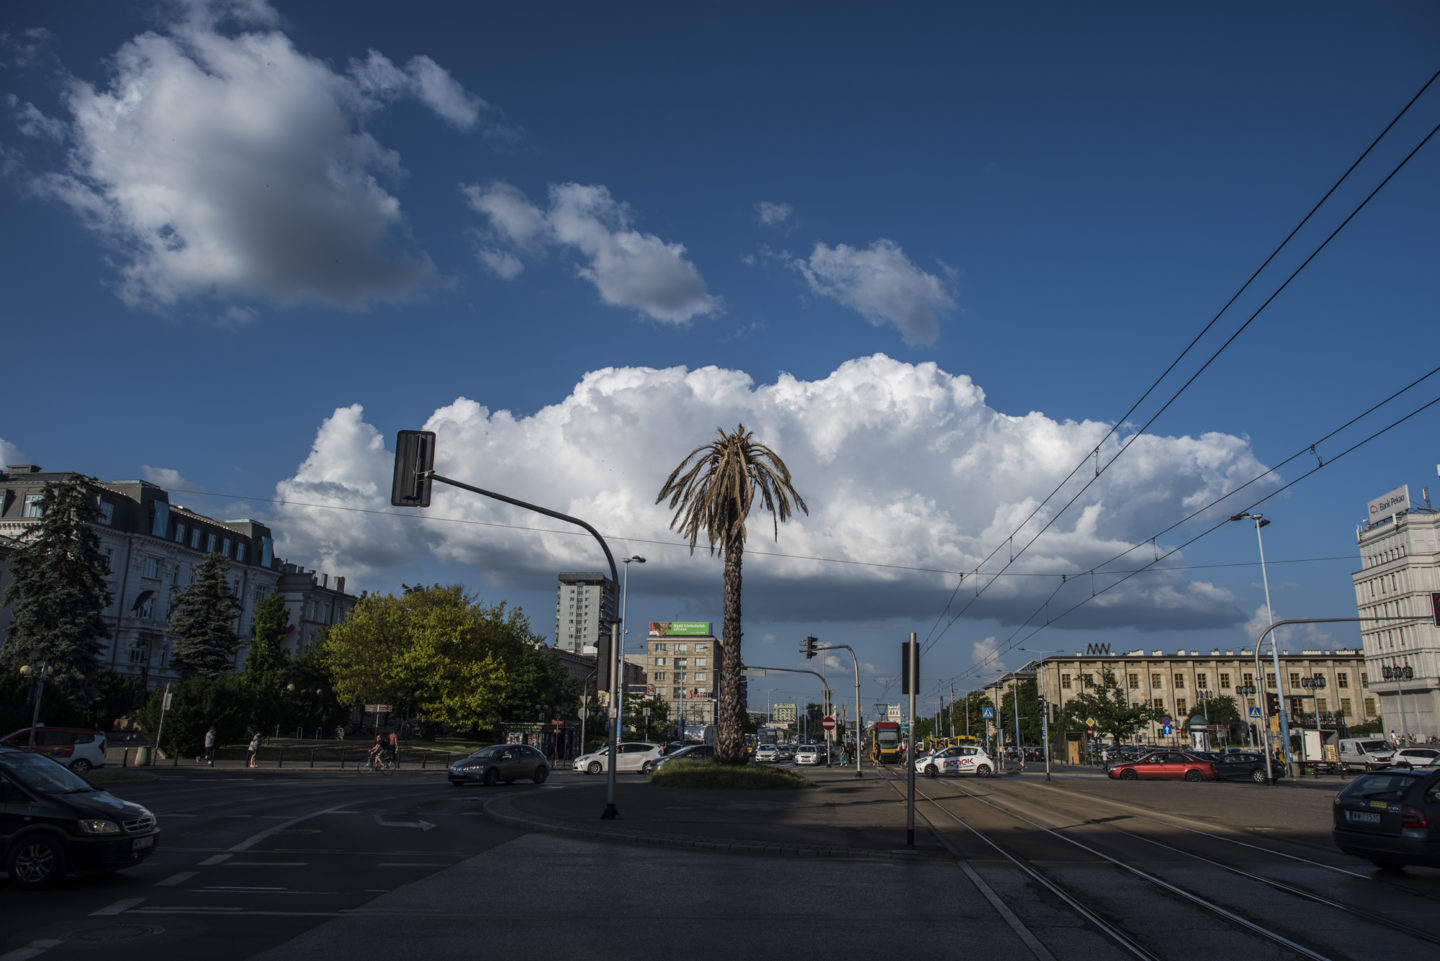 Fotografia pozioma. Ciepła kolorystyka. Rondo generała de Galulle'a w Warszawie. W centrum kadru widać żywą palmę. W tle za tropikalną rośliną unoszą się pojedyncze chmury. Dookoła ronda widoczne zazielenione drzewa liściaste w typowo miejskiej scenerii. 